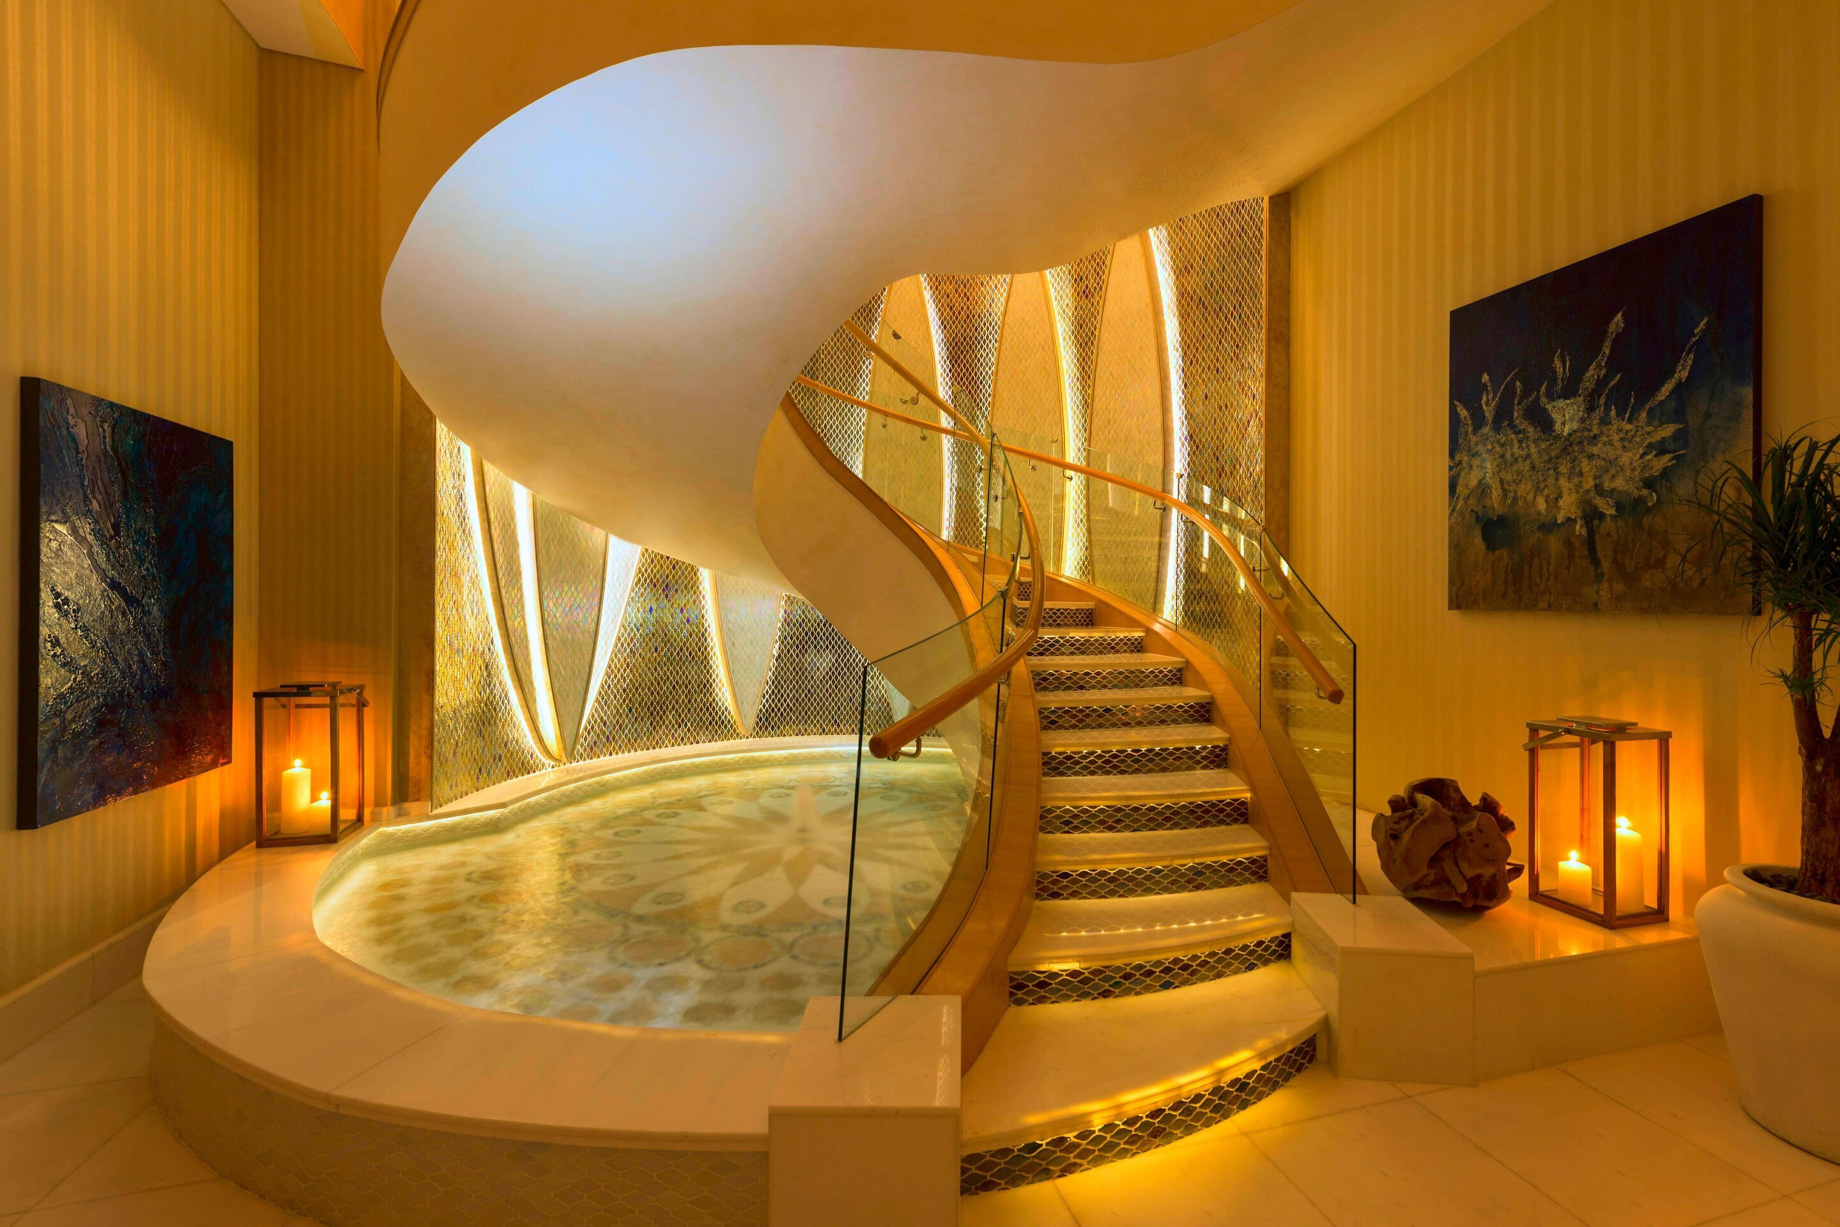 The St. Regis Saadiyat Island Resort - Abu Dhabi, UAE - Royal Suite Grand Staircase